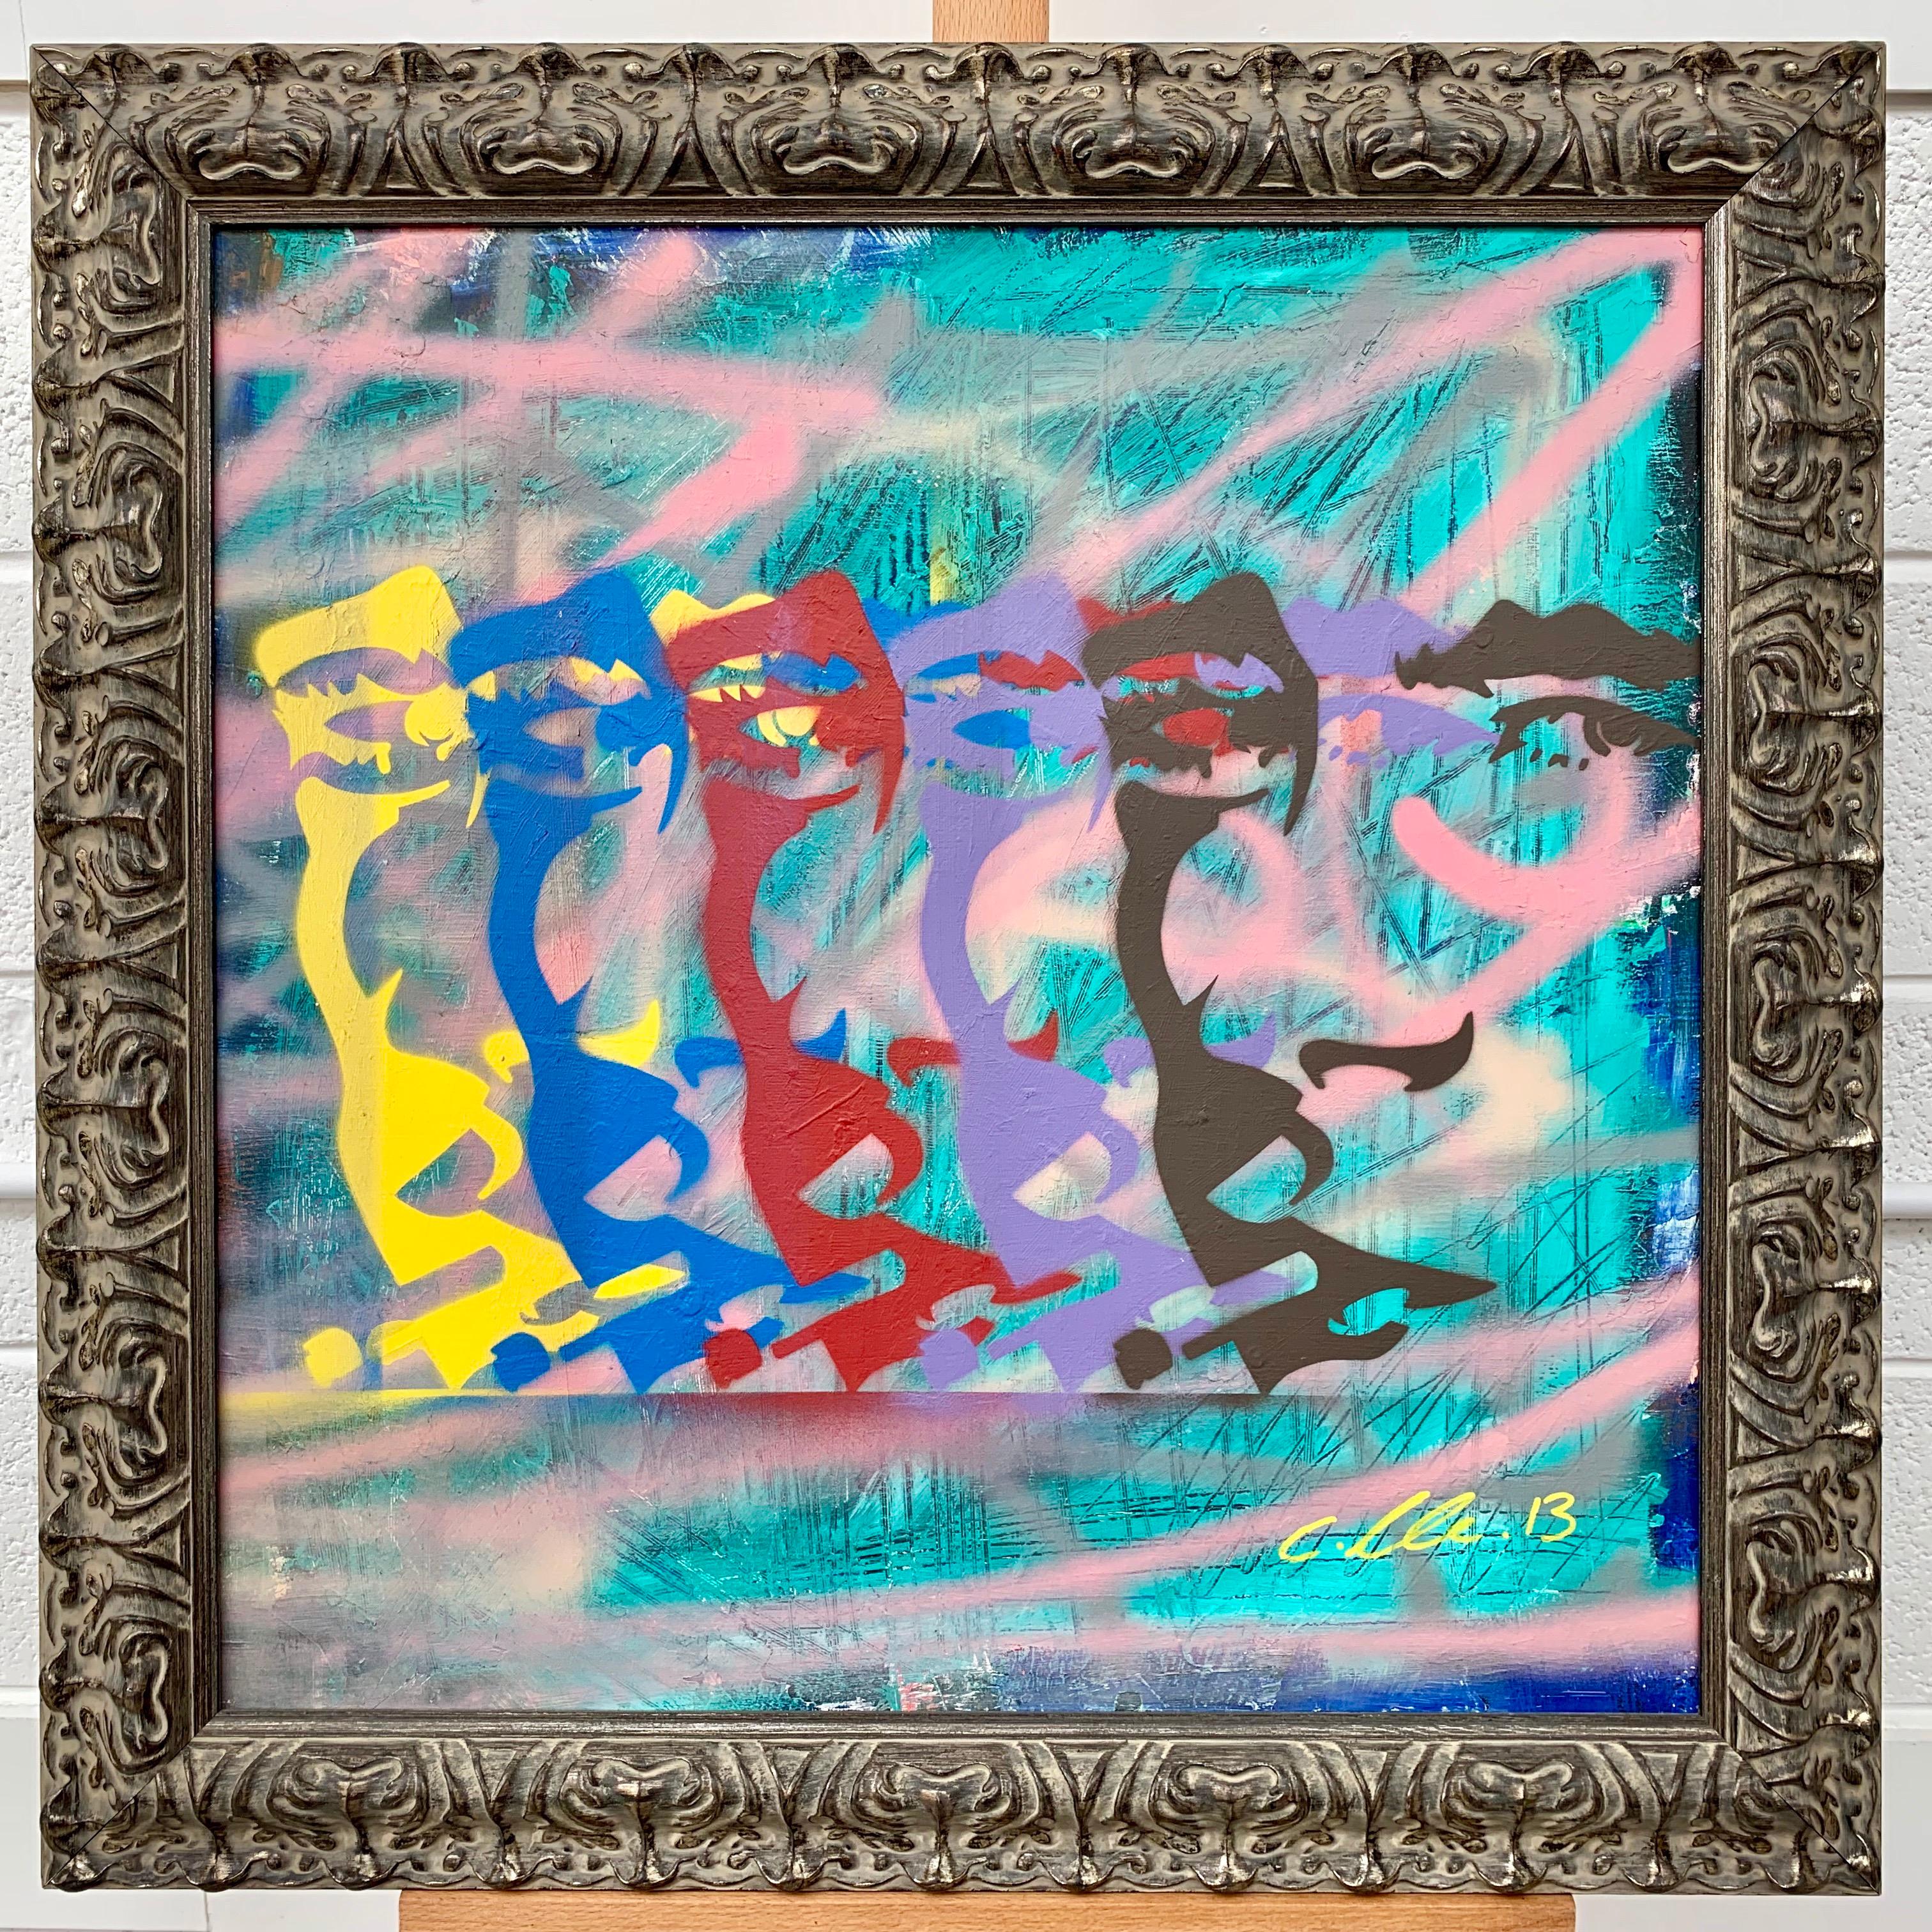 James Dean Smoking Cigarette Portrait Pop Art von Chris Pegg, britischer Urban Graffiti Künstler. Chris Pegg ist ein autodidaktischer Street Artist, der Kunstwerke mit einem starken sozialen Kommentar produziert.  

Seine Arbeit ist von Künstlern